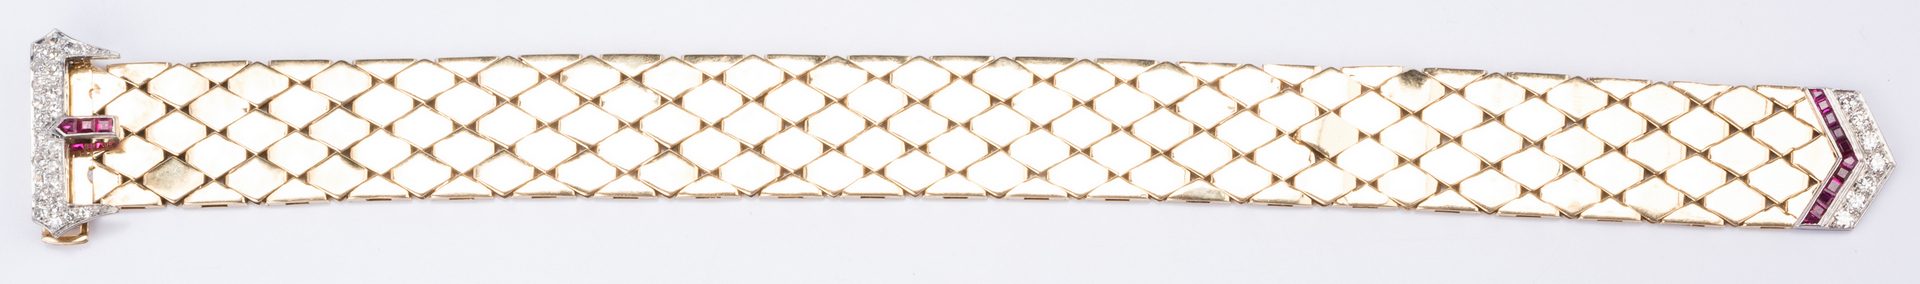 Lot 48: Art Deco Buckle Bracelet, 14K Ruby, Diamonds